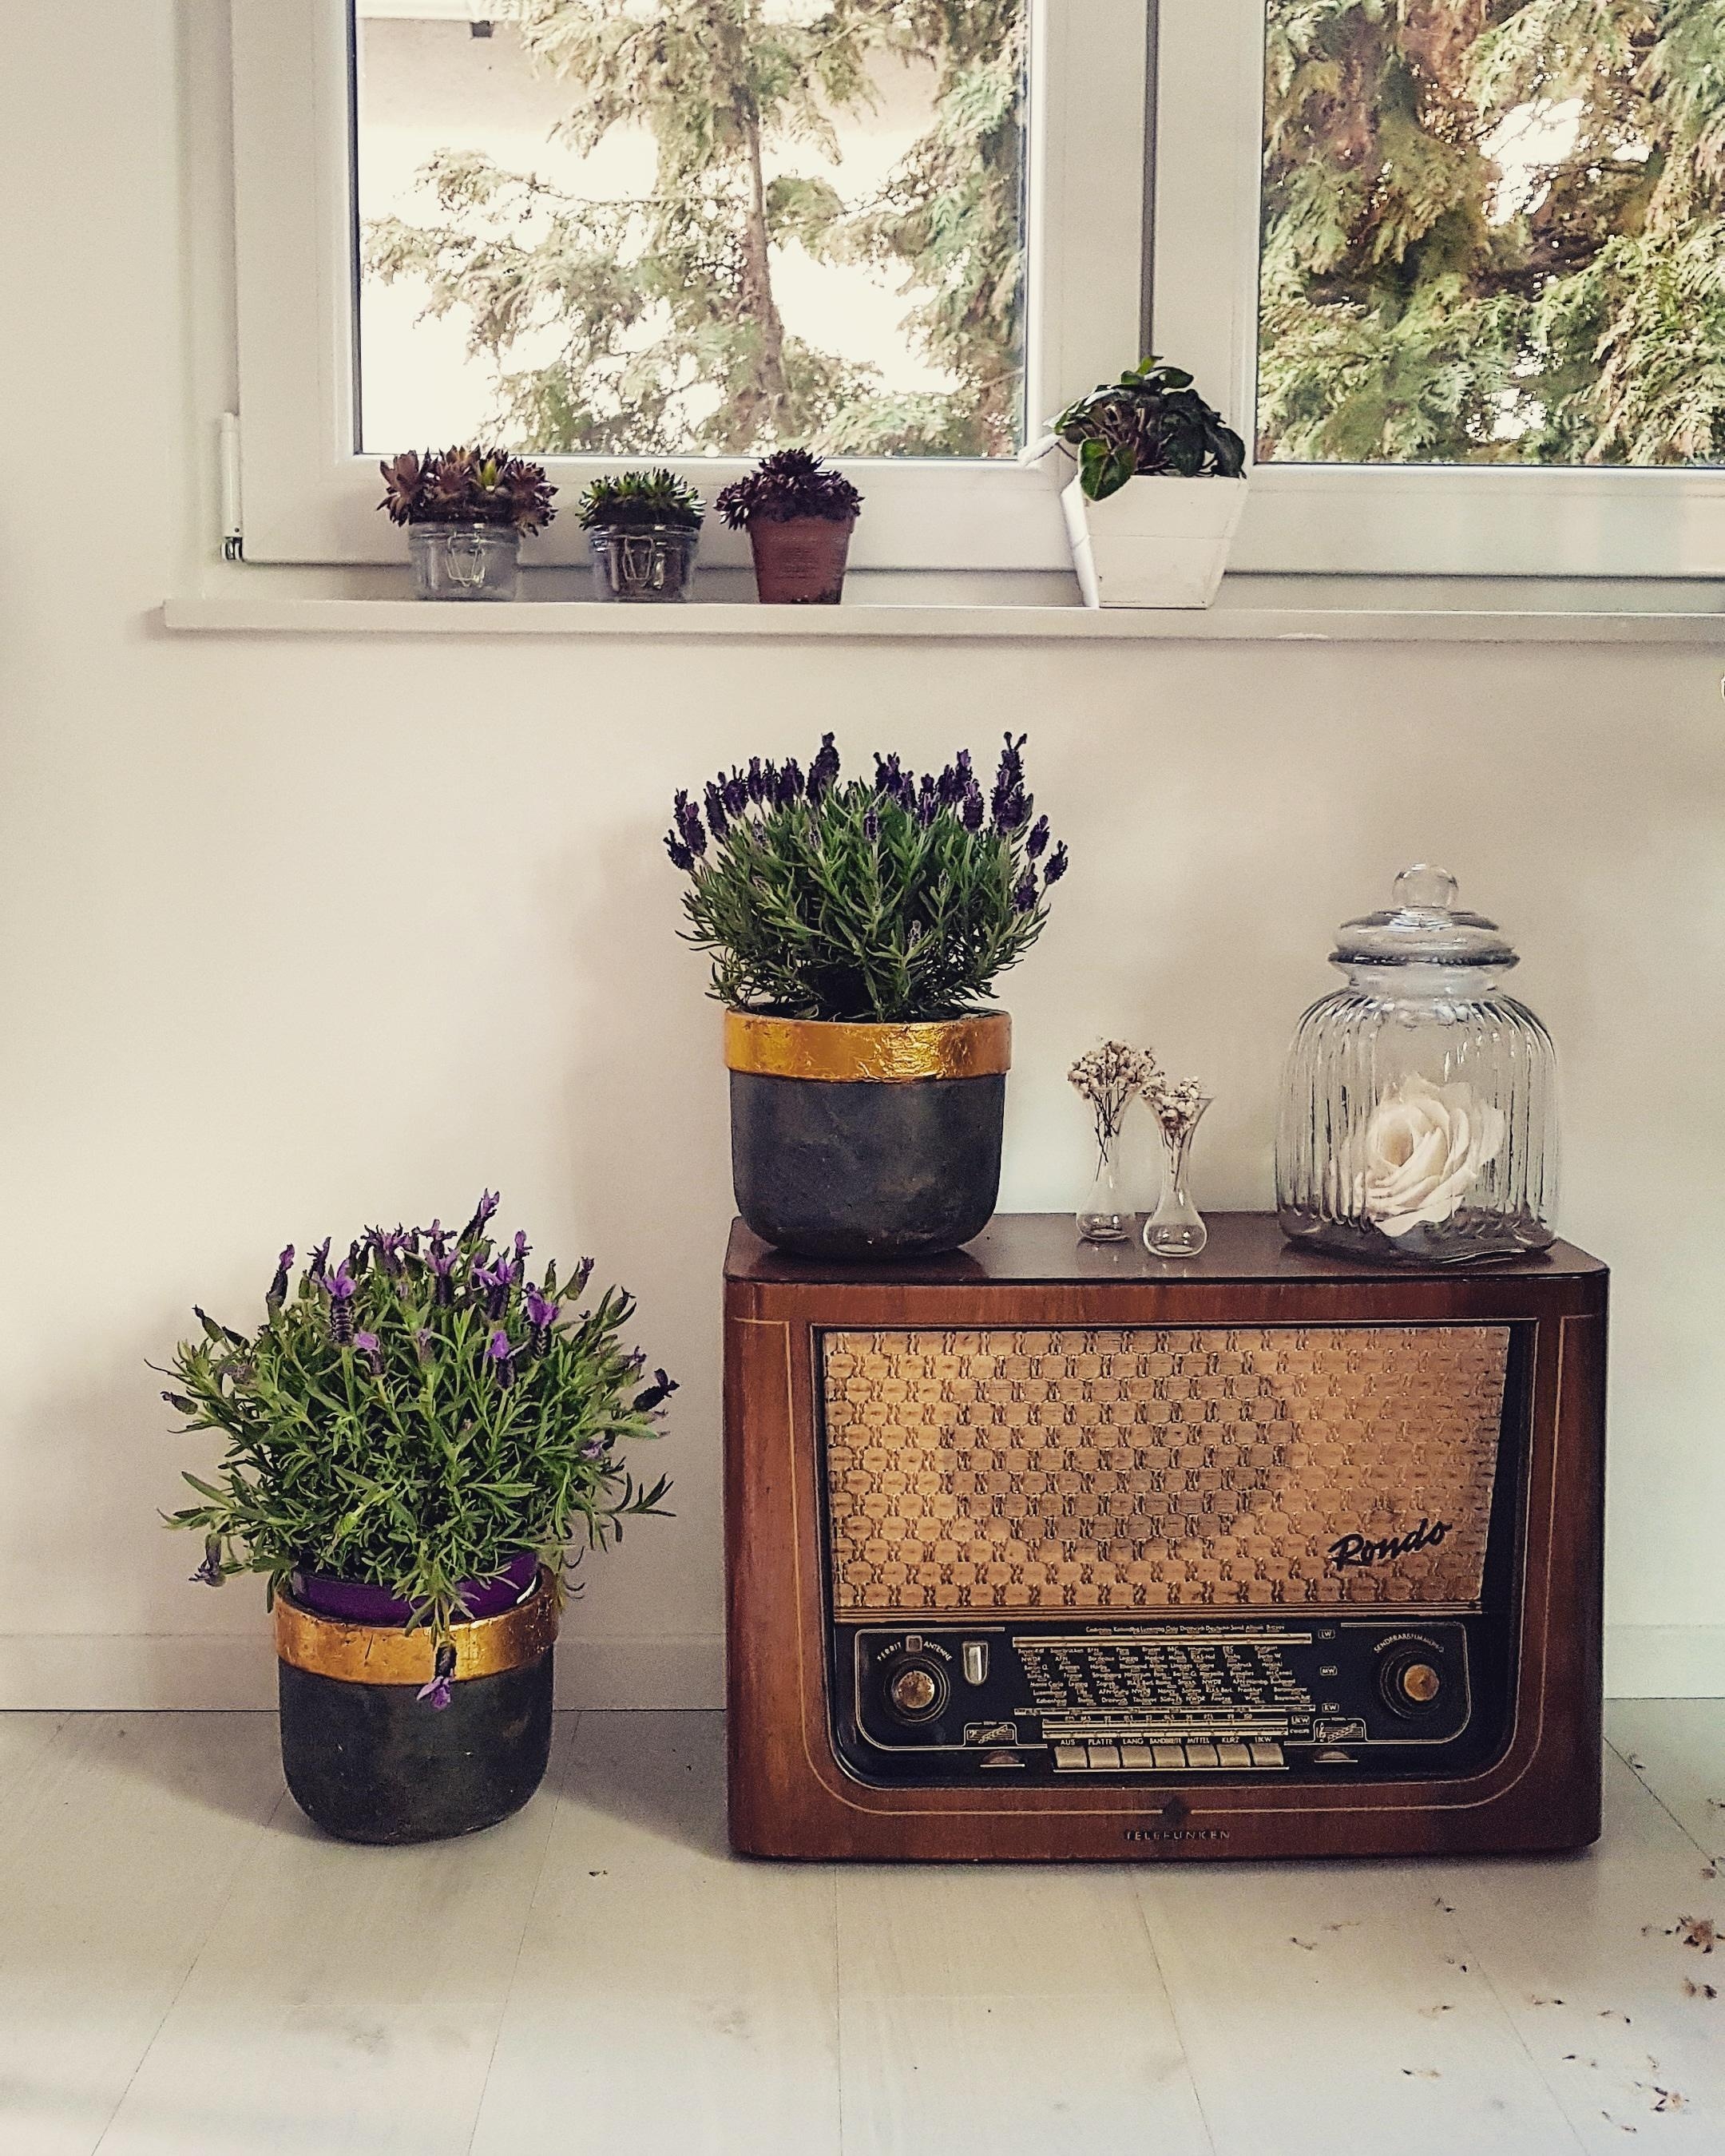 Flowerpower und Omas Radio 🛋🌱
#couchstyle #vintage #vintagestyle #flowerpower #plant 